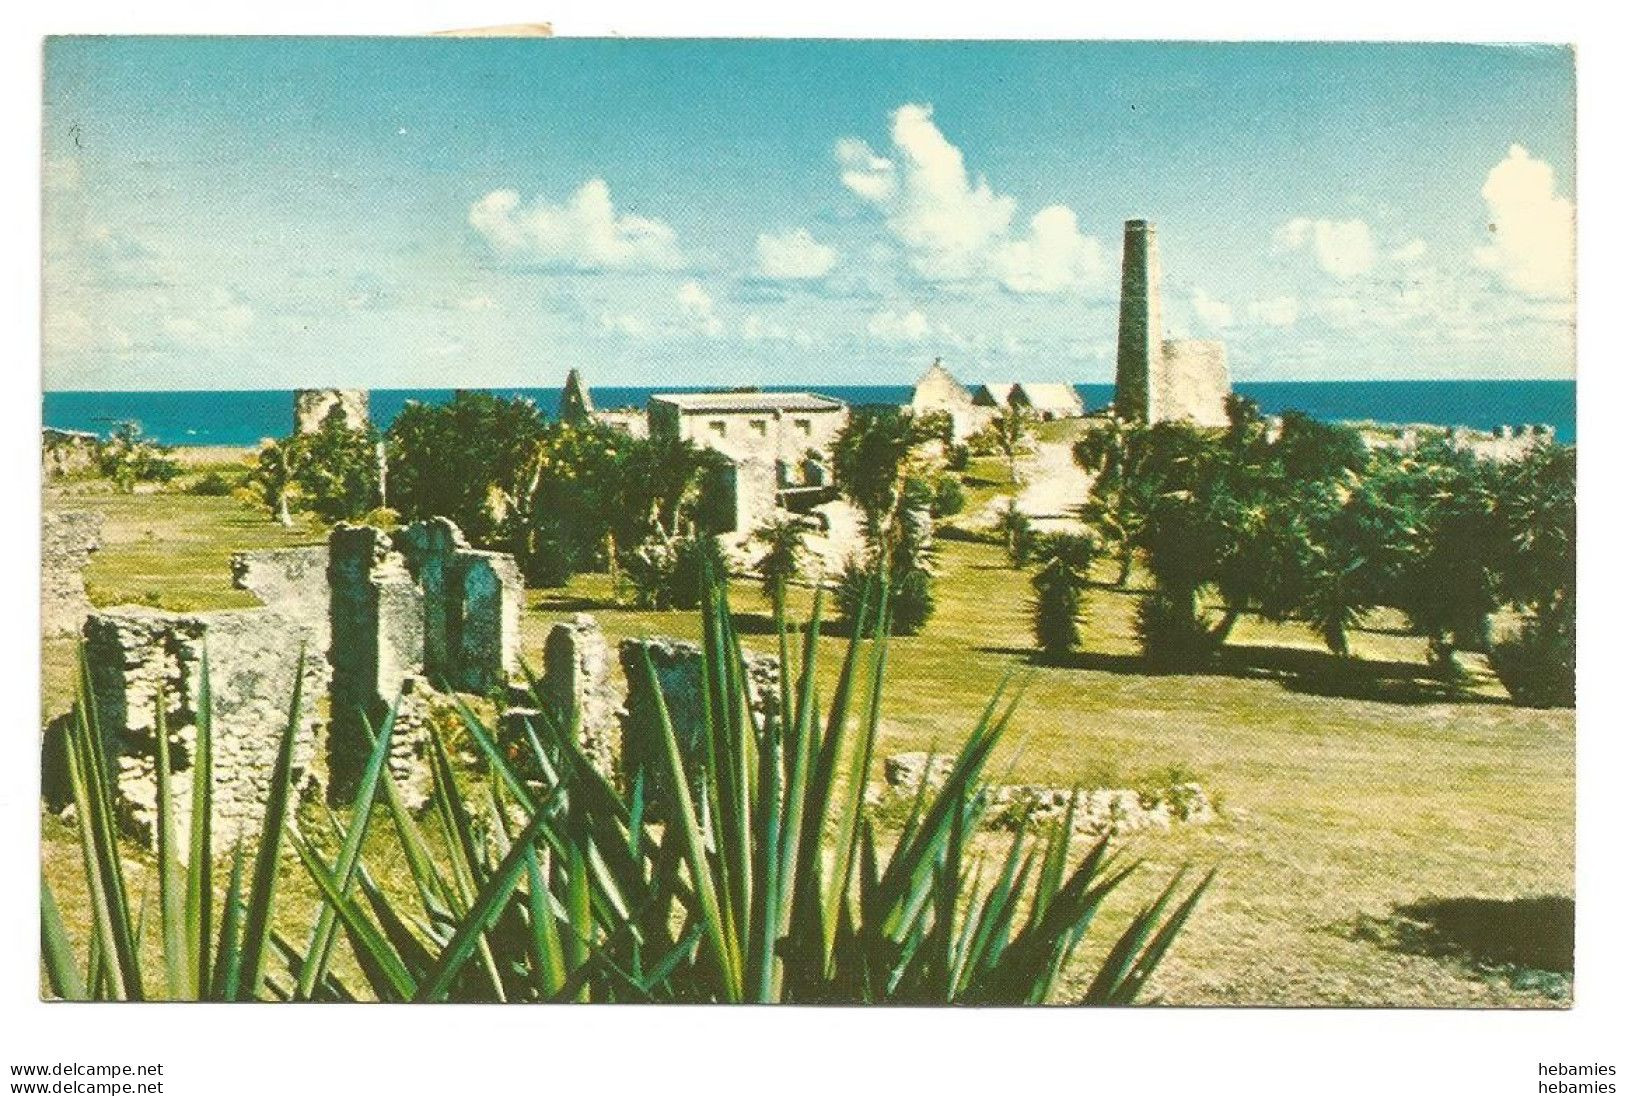 ST. CROIX - JUDITH'S FANCY - U.S. VIRGIN ISLANDS - USA - - Virgin Islands, US